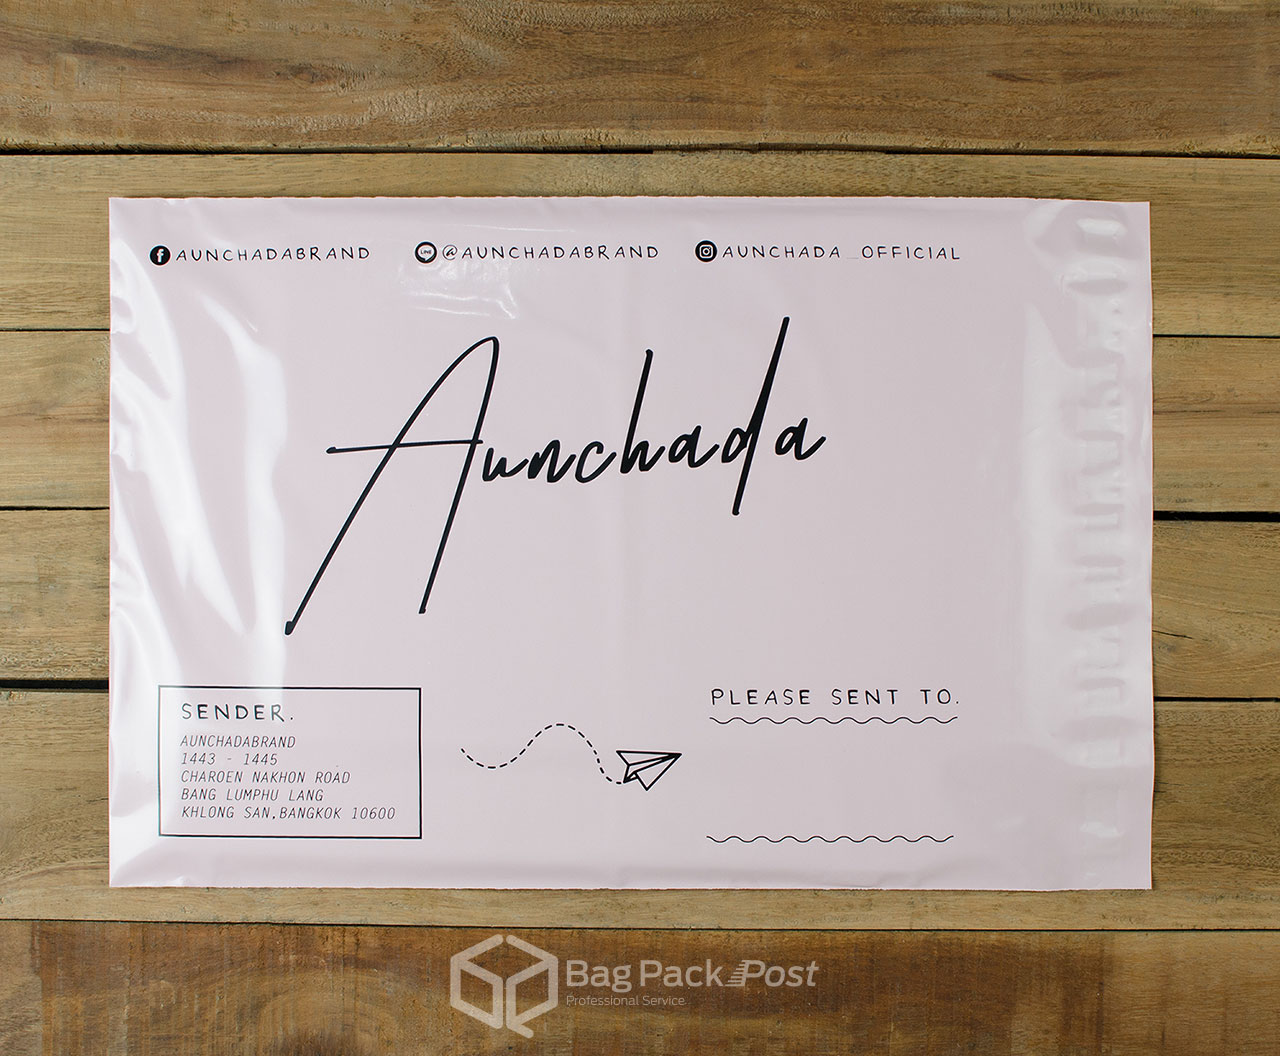 ผลิตถุงไปรษณีย์ ซองไปรษณีย์พิมพ์ลาย ถุงไปรษณีย์พิมพ์ลาย  ซองพิมพ์ลาย Aunchada | BagPackPost